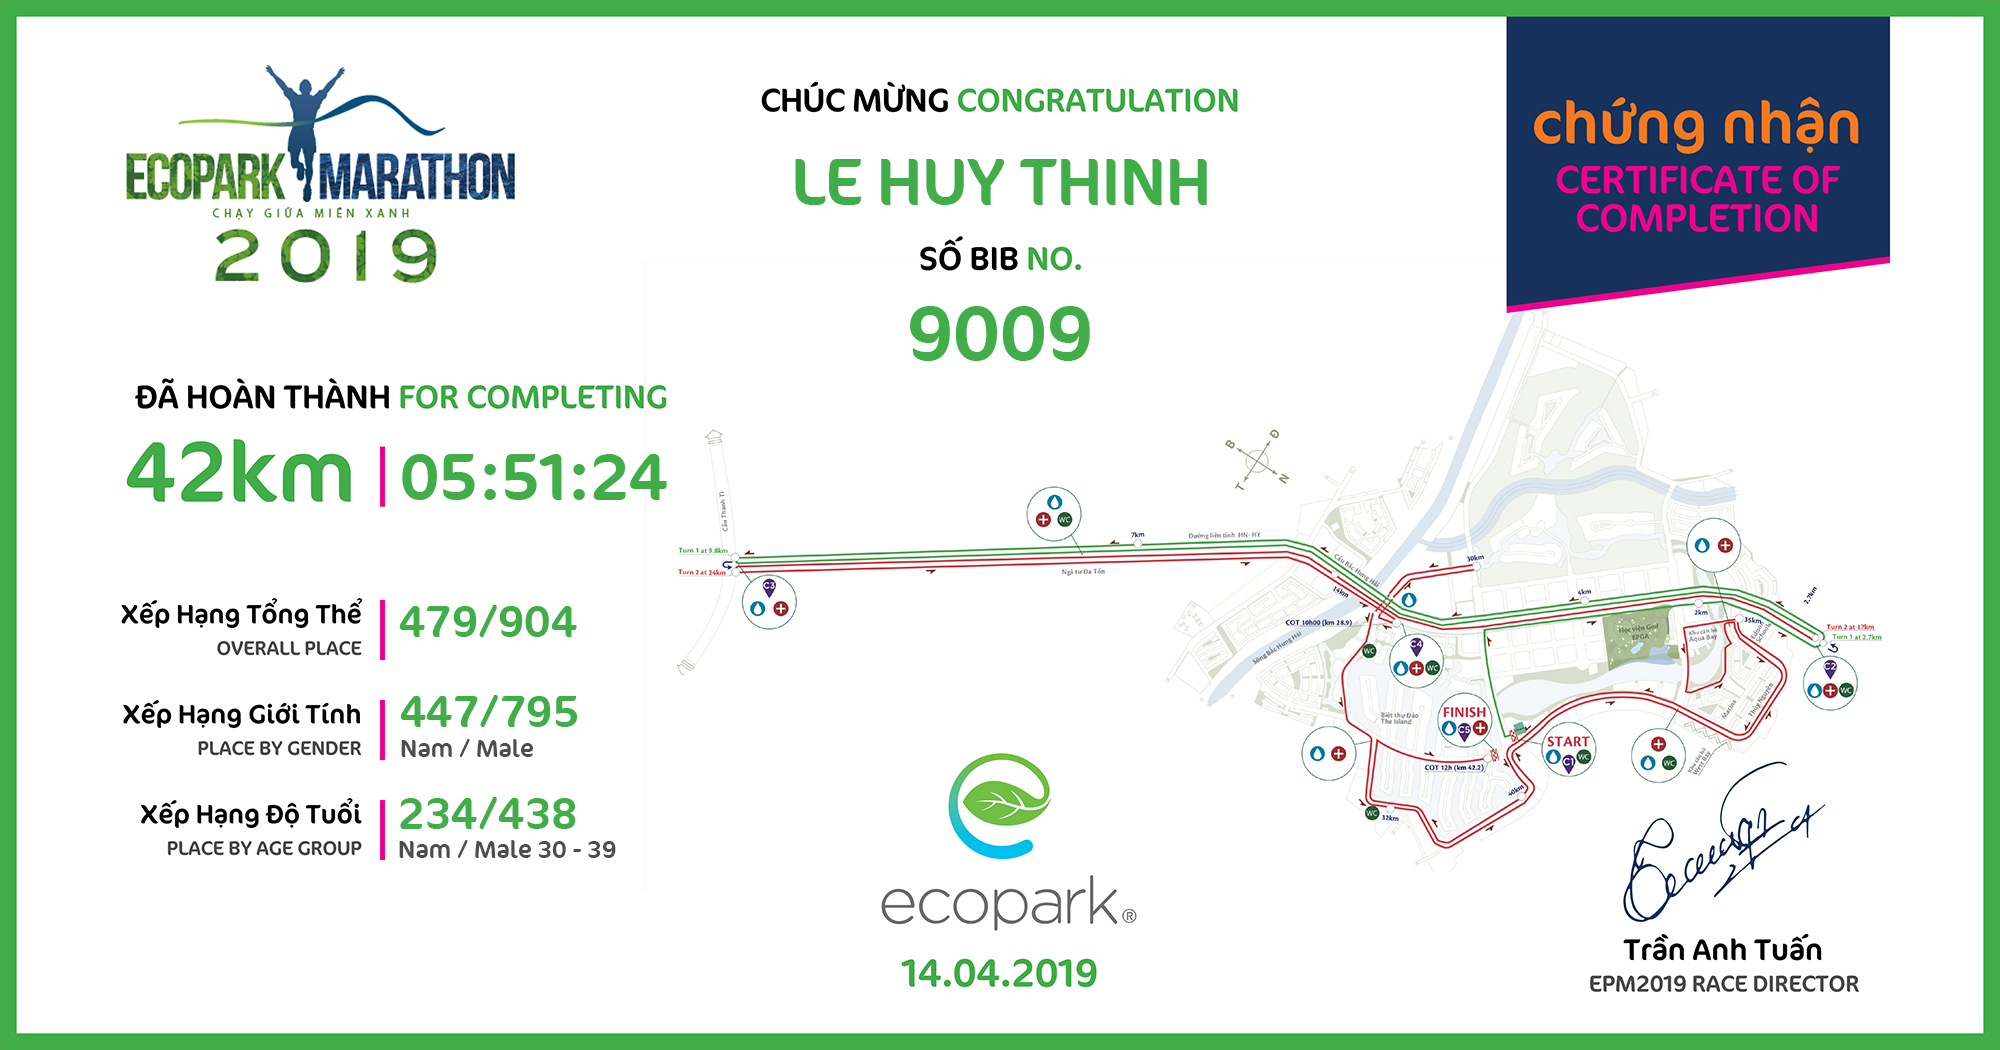 9009 - Le Huy Thinh